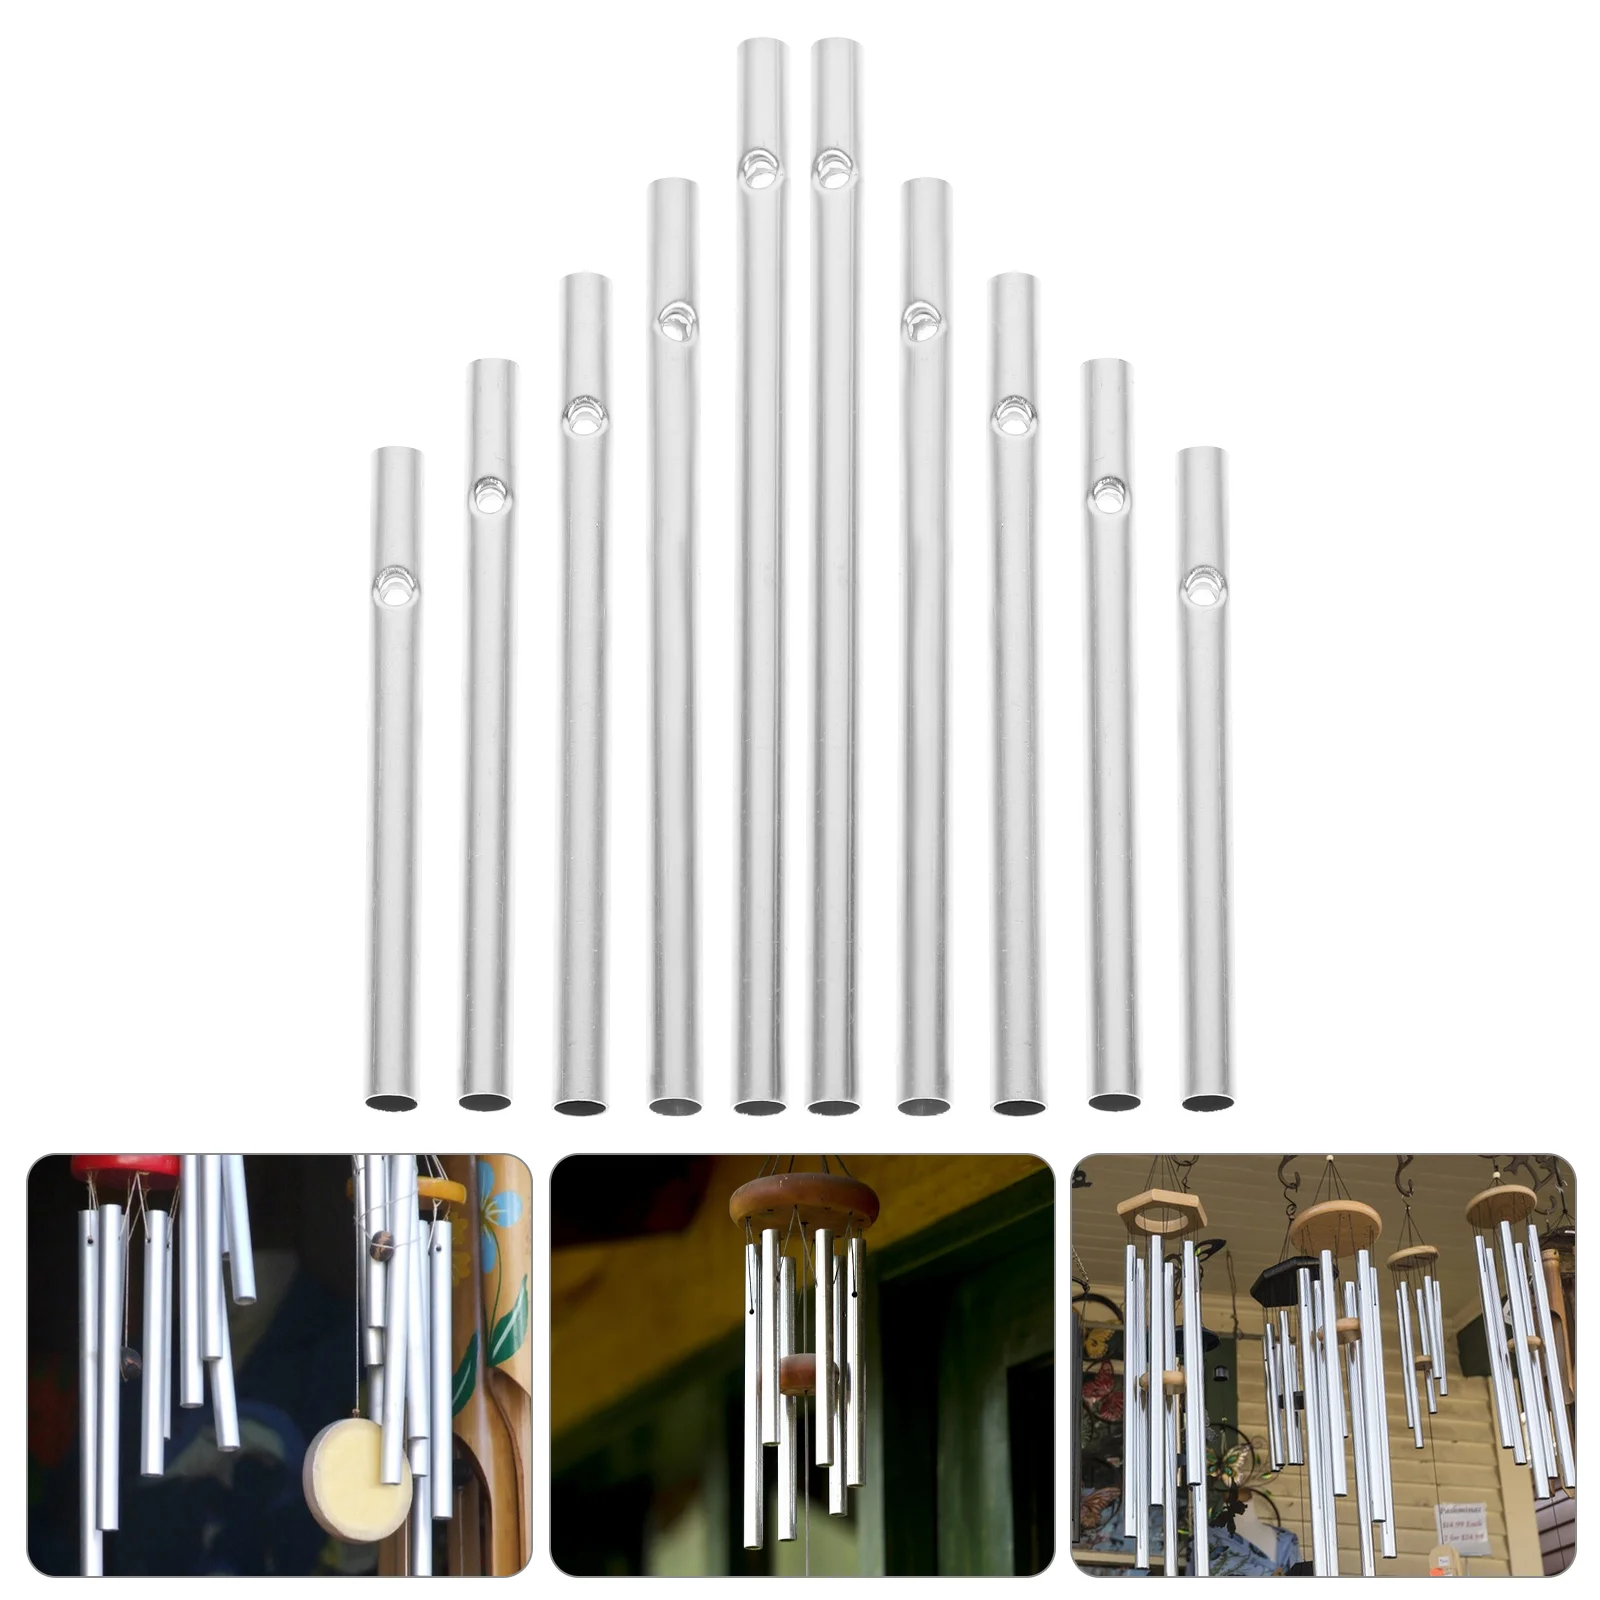 

60 шт. пустотелых трубок, алюминиевые фототрубки для изготовления ветряных колокольчиков